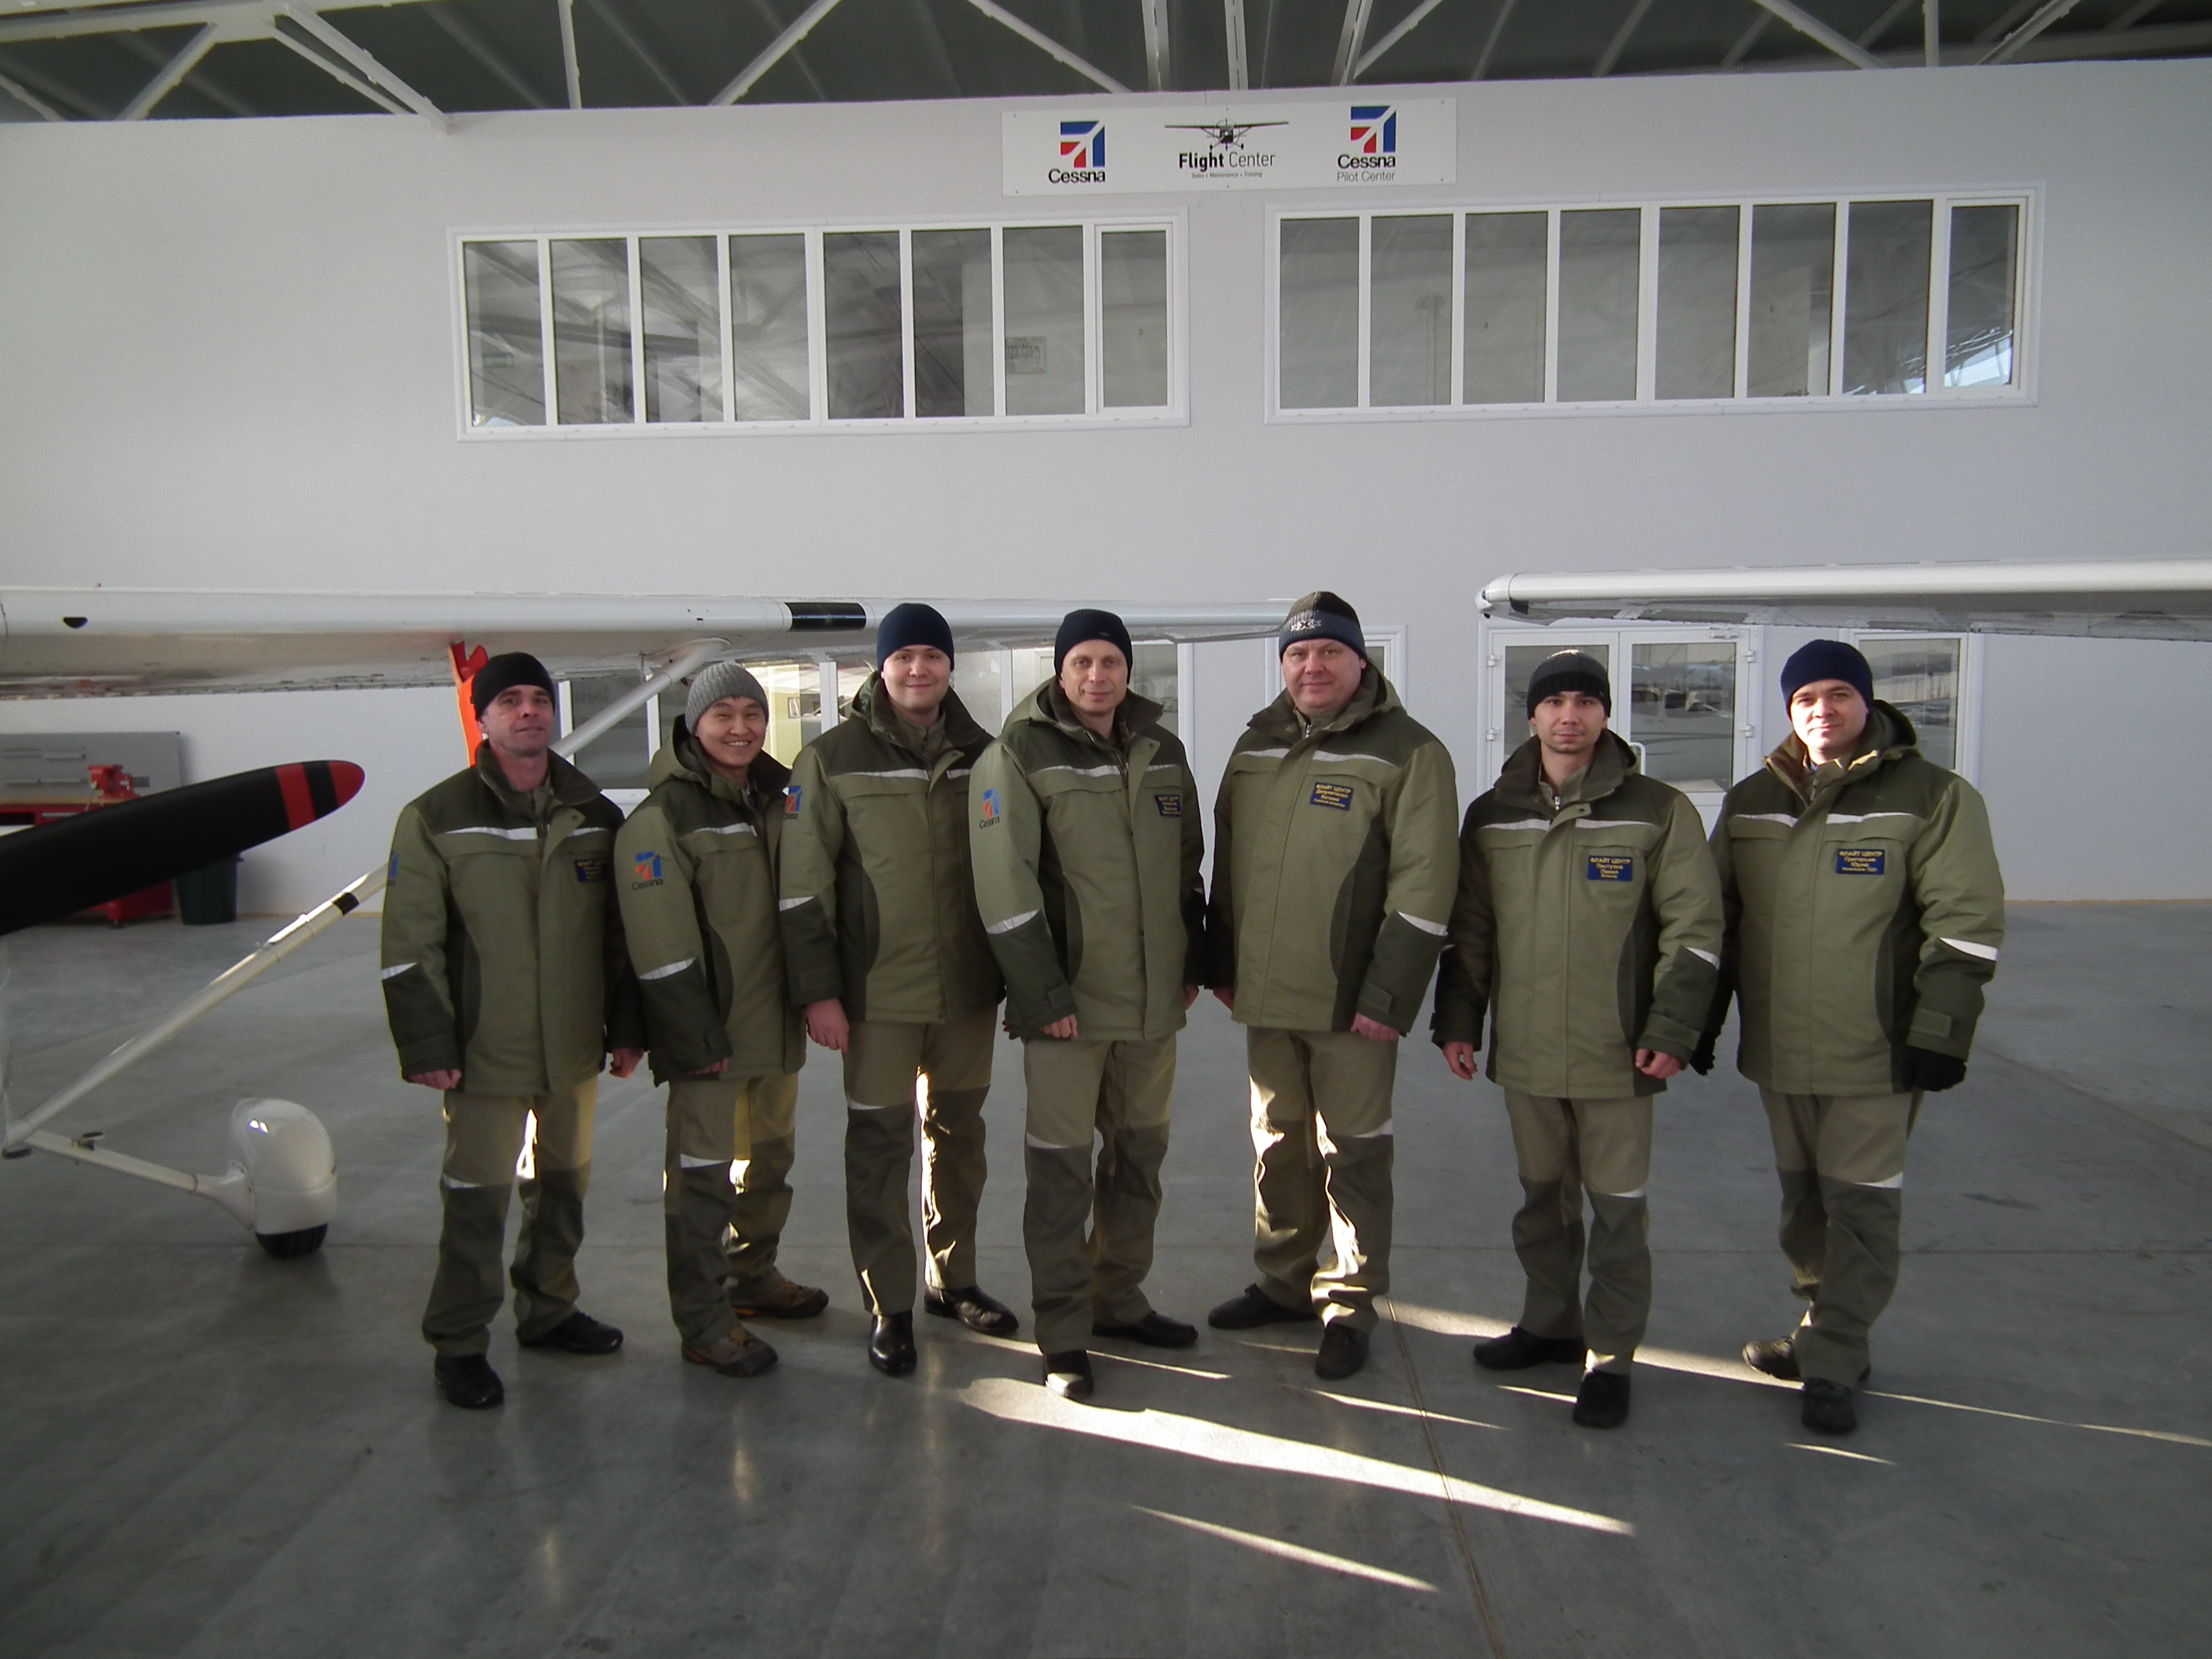 обслуживание цессна в россии - команда flight center